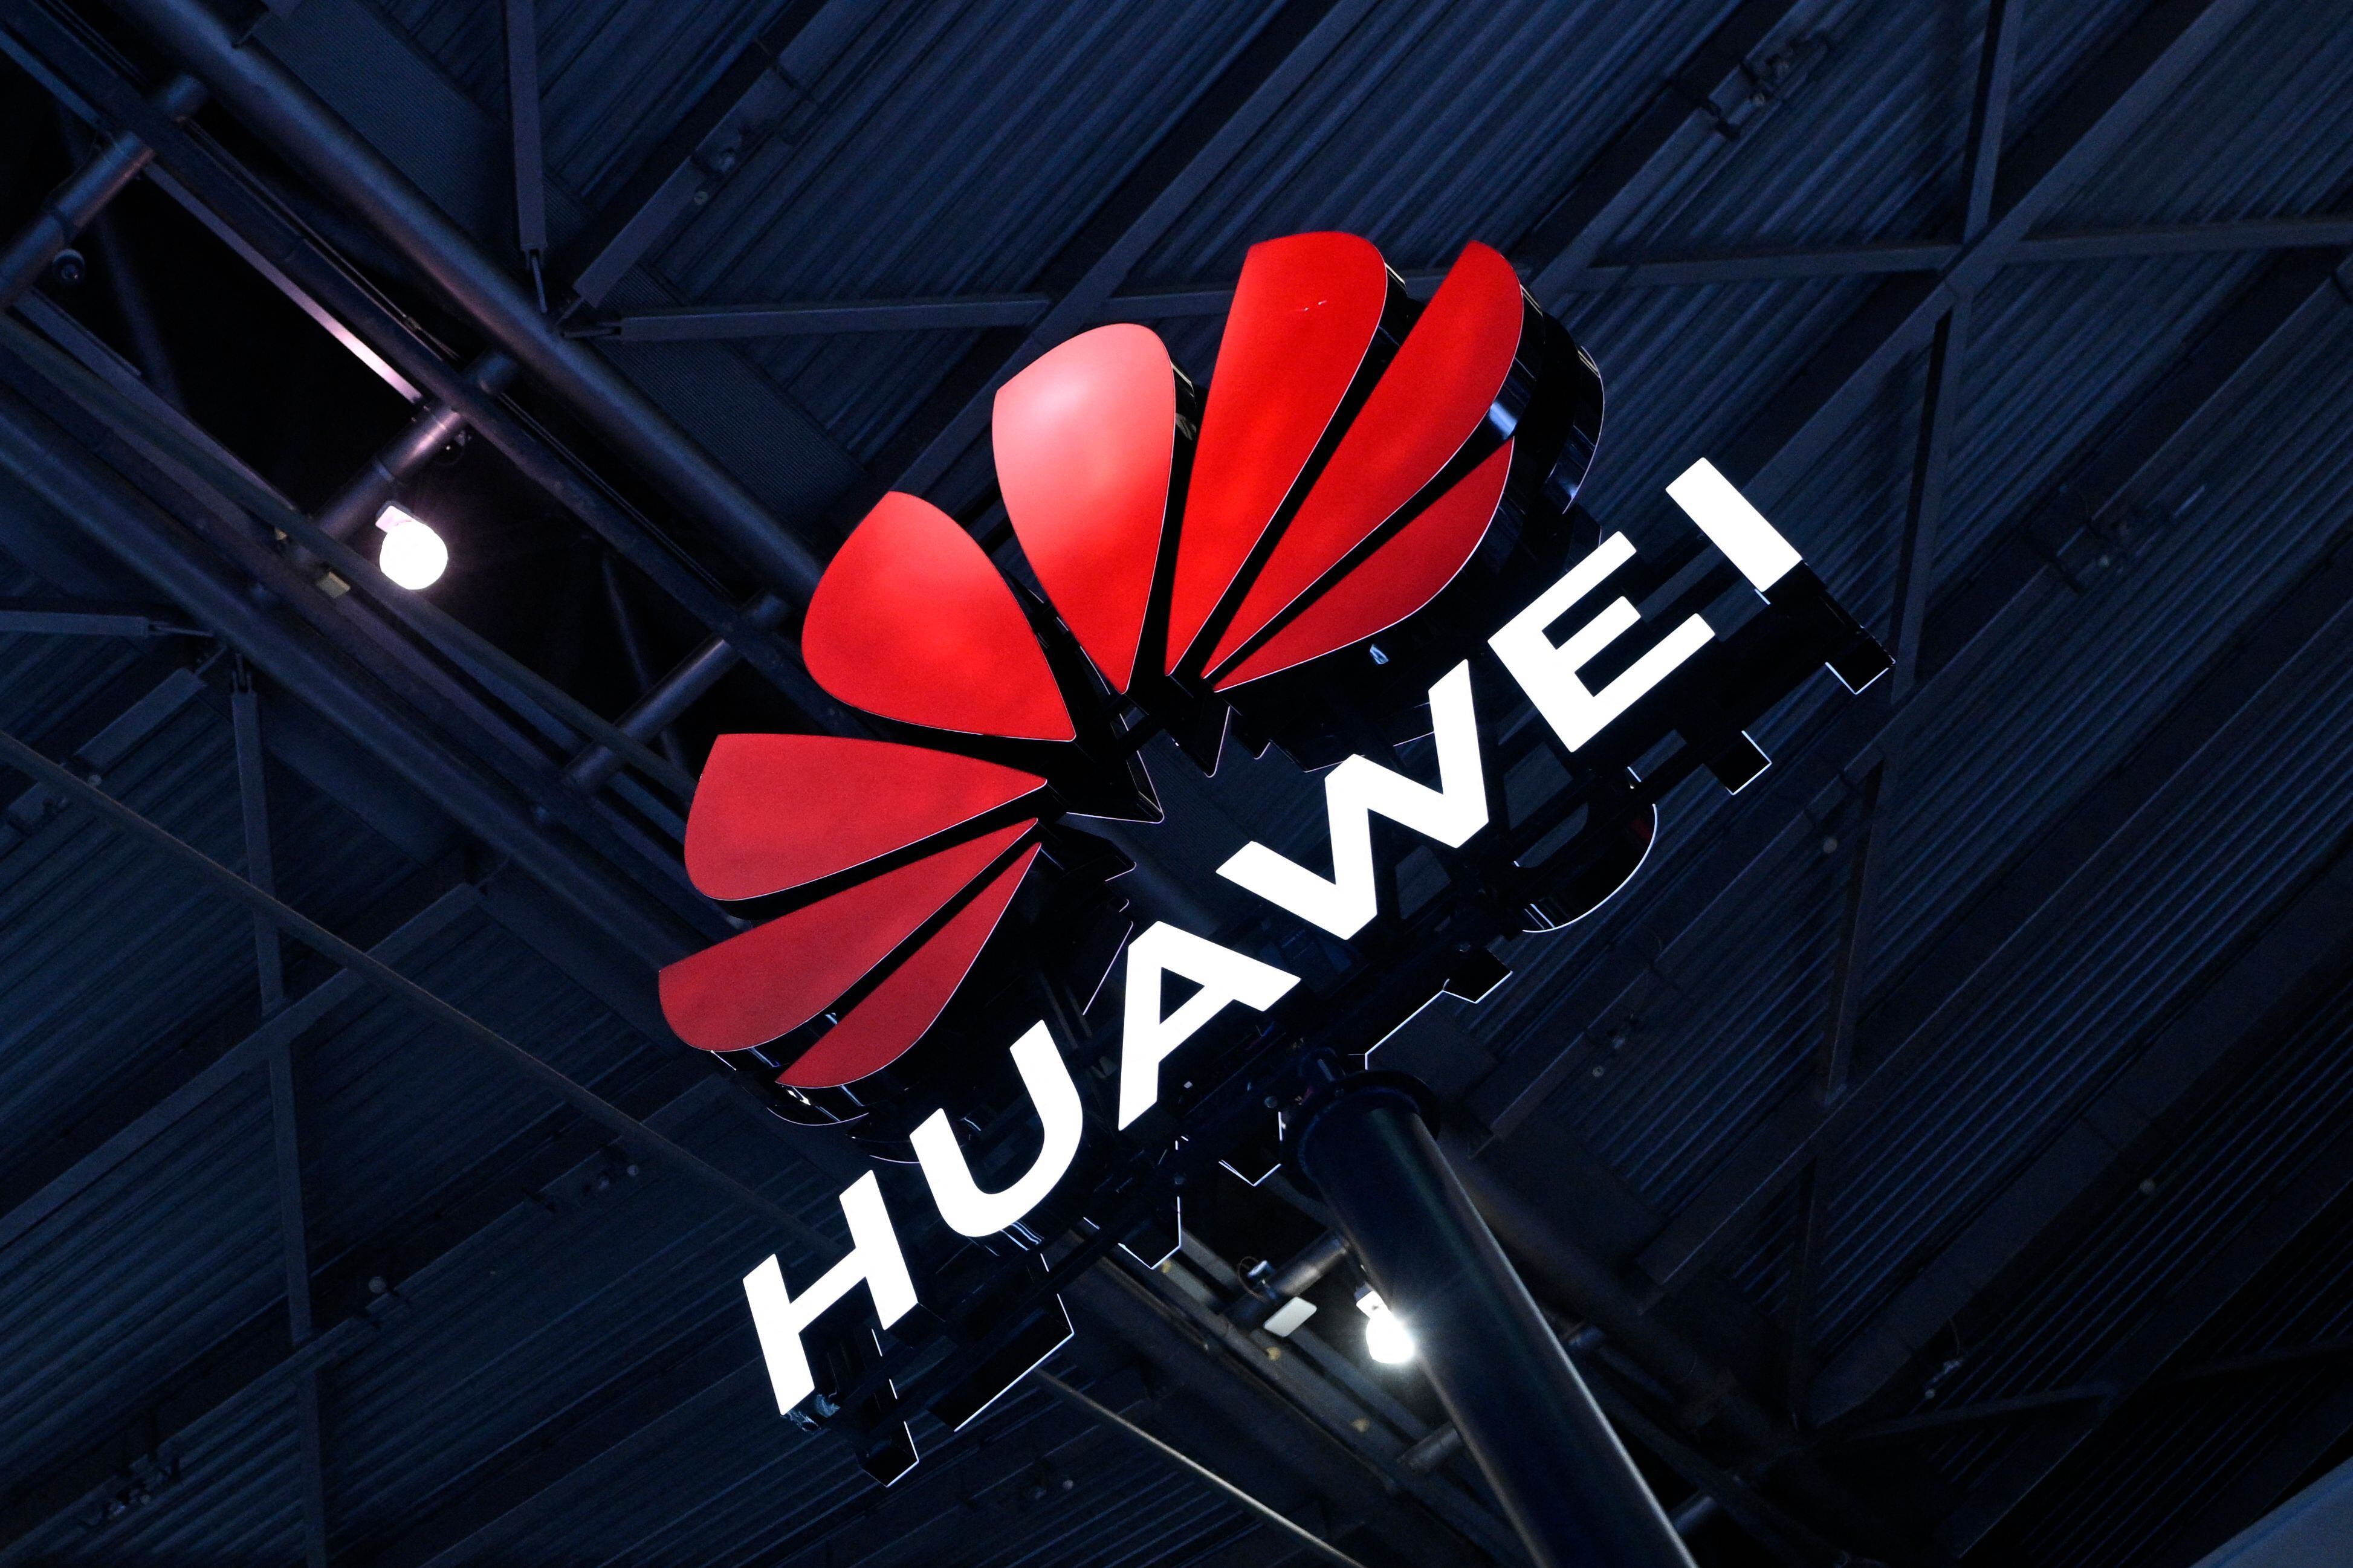 La compañía china Huawei presentó su primera computadora portátil con inteligencia artificial (IA), impulsada por un semiconductor fabricado por Intel. La compañía china está sancionada por Estados Unidos desde 2019, razón por la que legisladores republicanos reclamaron que persista ese vínculo.